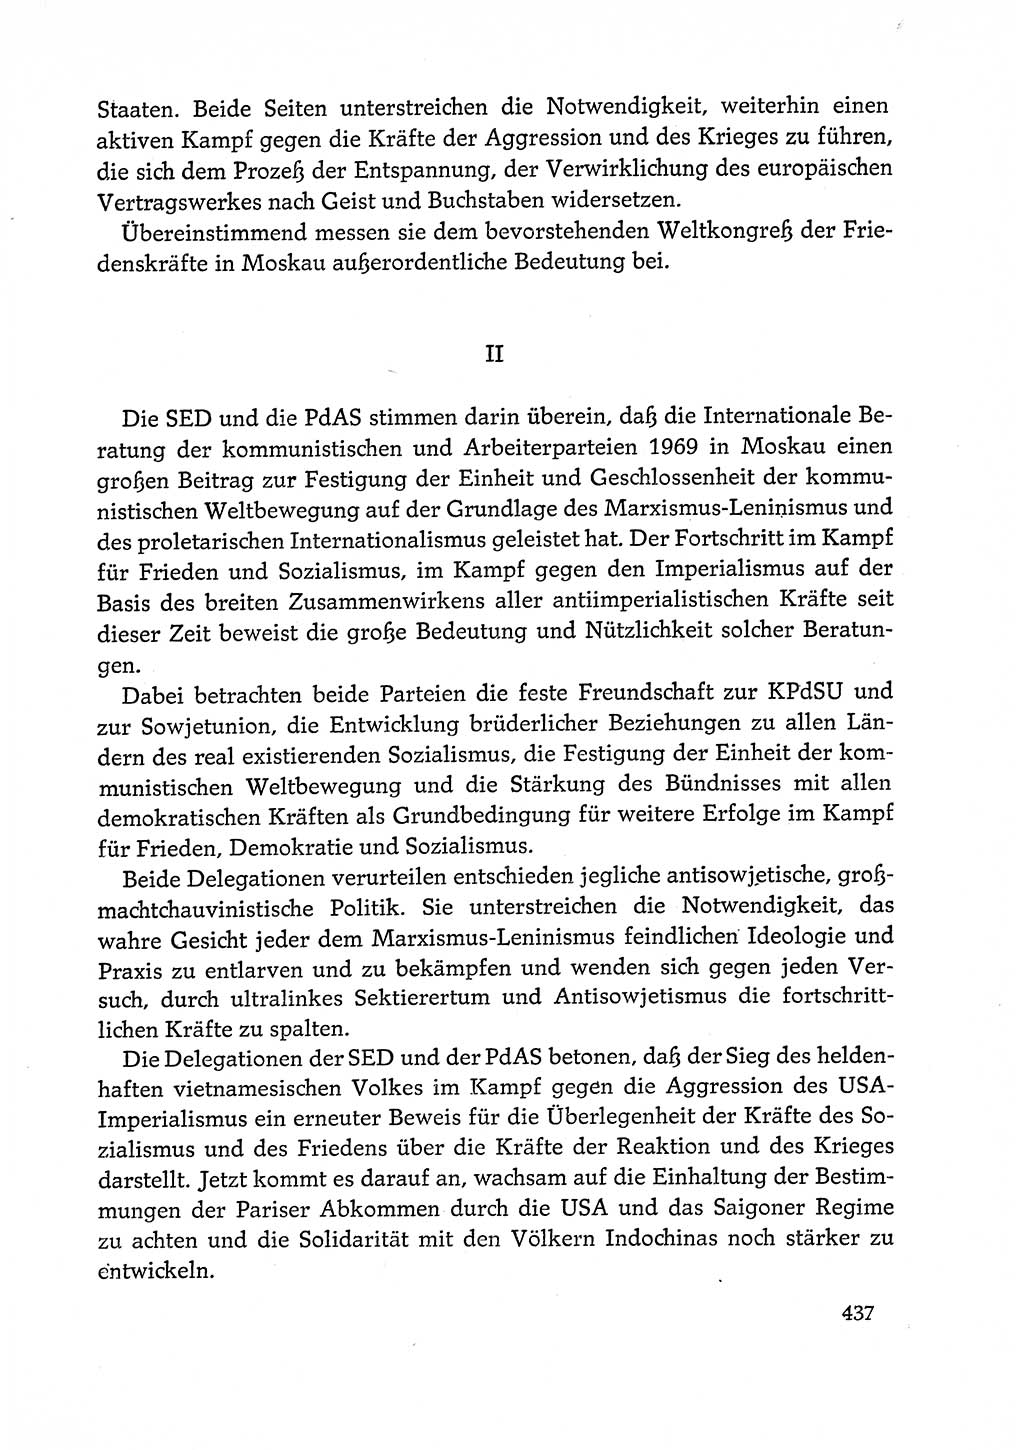 Dokumente der Sozialistischen Einheitspartei Deutschlands (SED) [Deutsche Demokratische Republik (DDR)] 1972-1973, Seite 437 (Dok. SED DDR 1972-1973, S. 437)